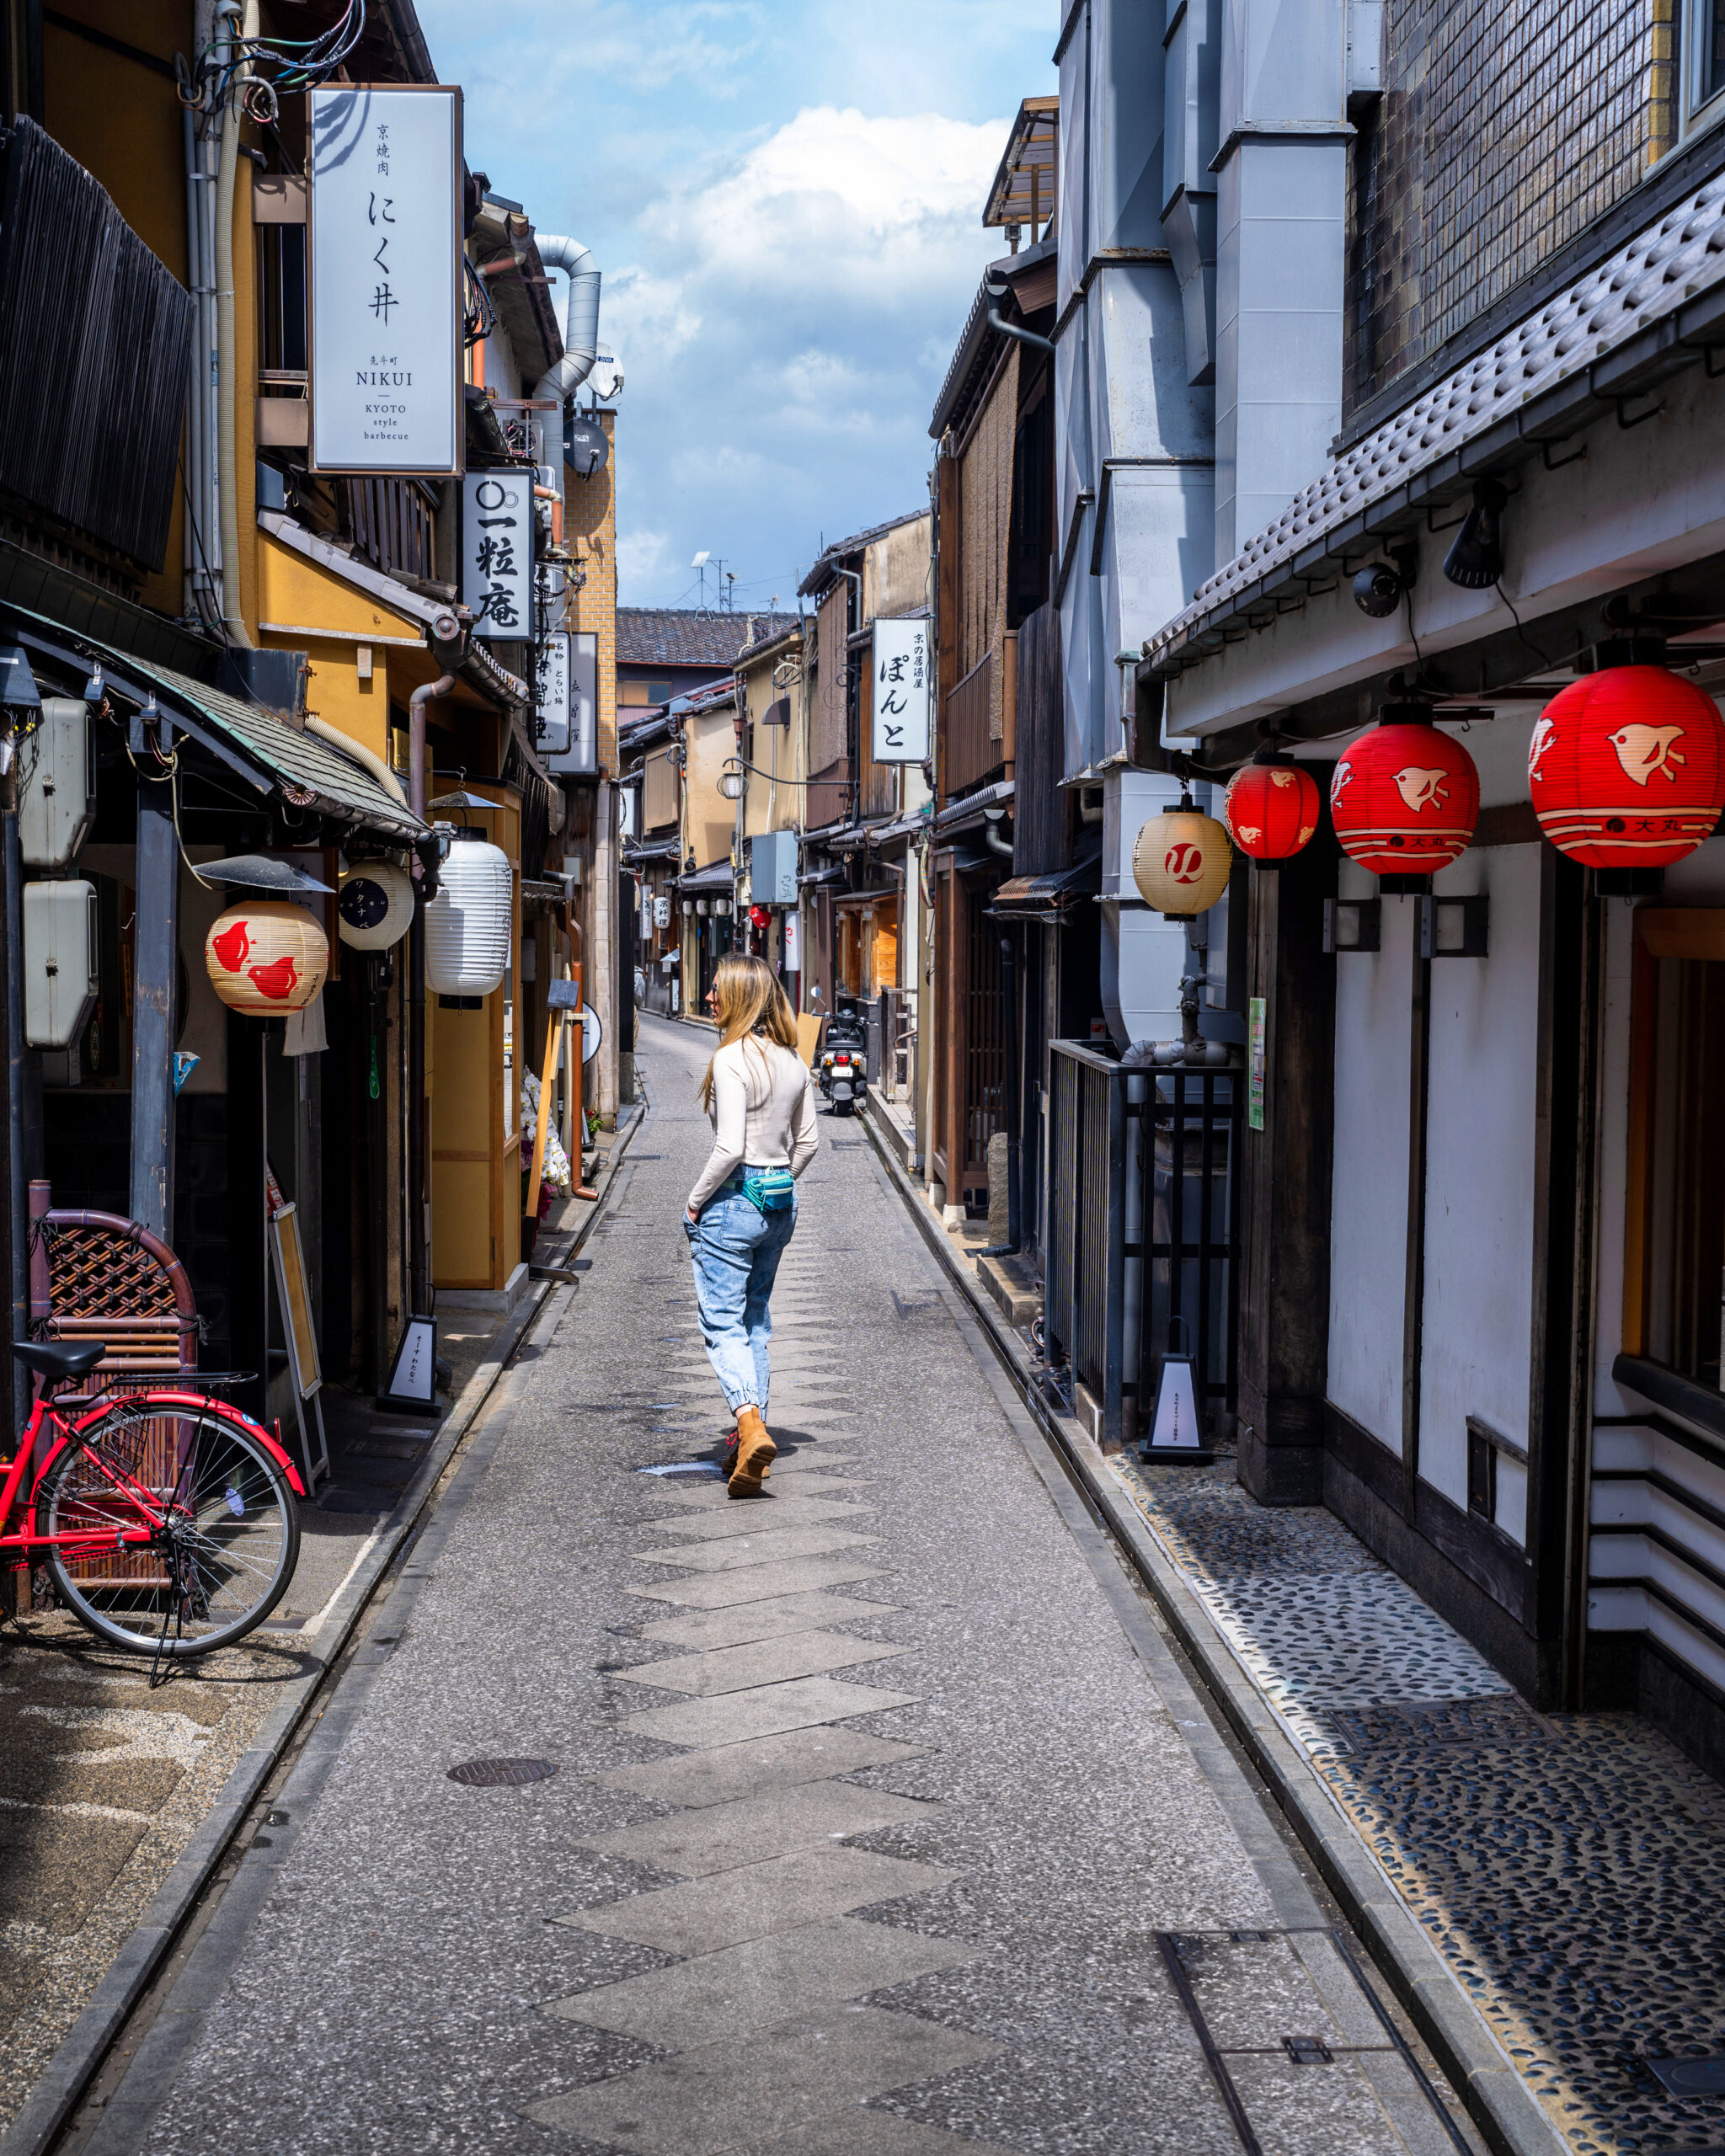 A woman wanders an empty side street in Kyoto, Japan.